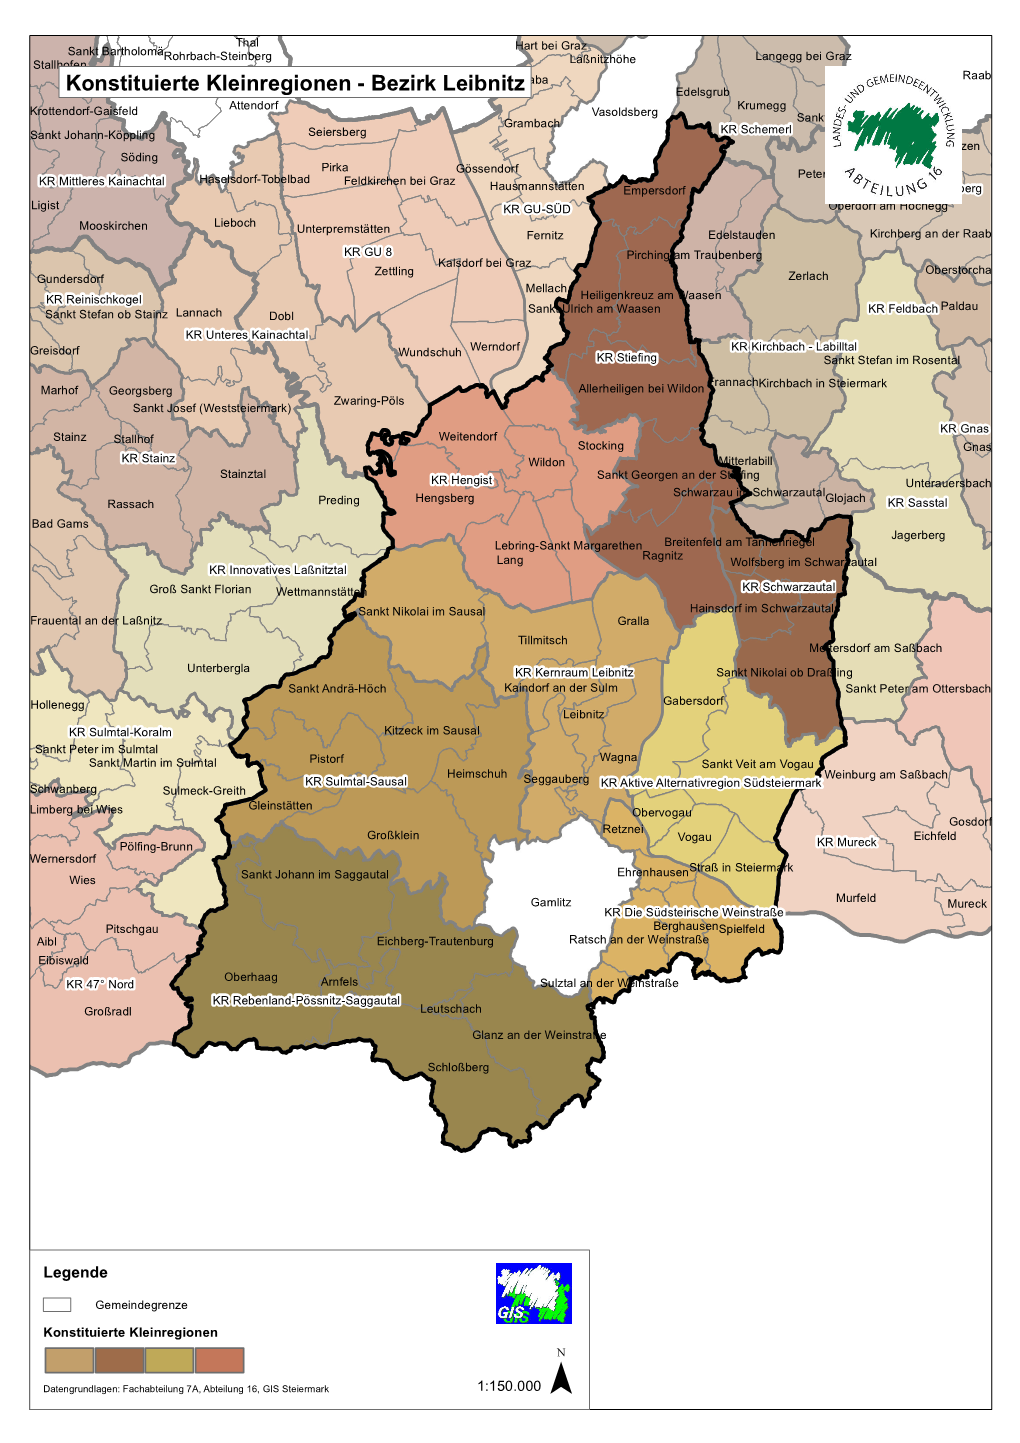 Konstituierte Kleinregionen